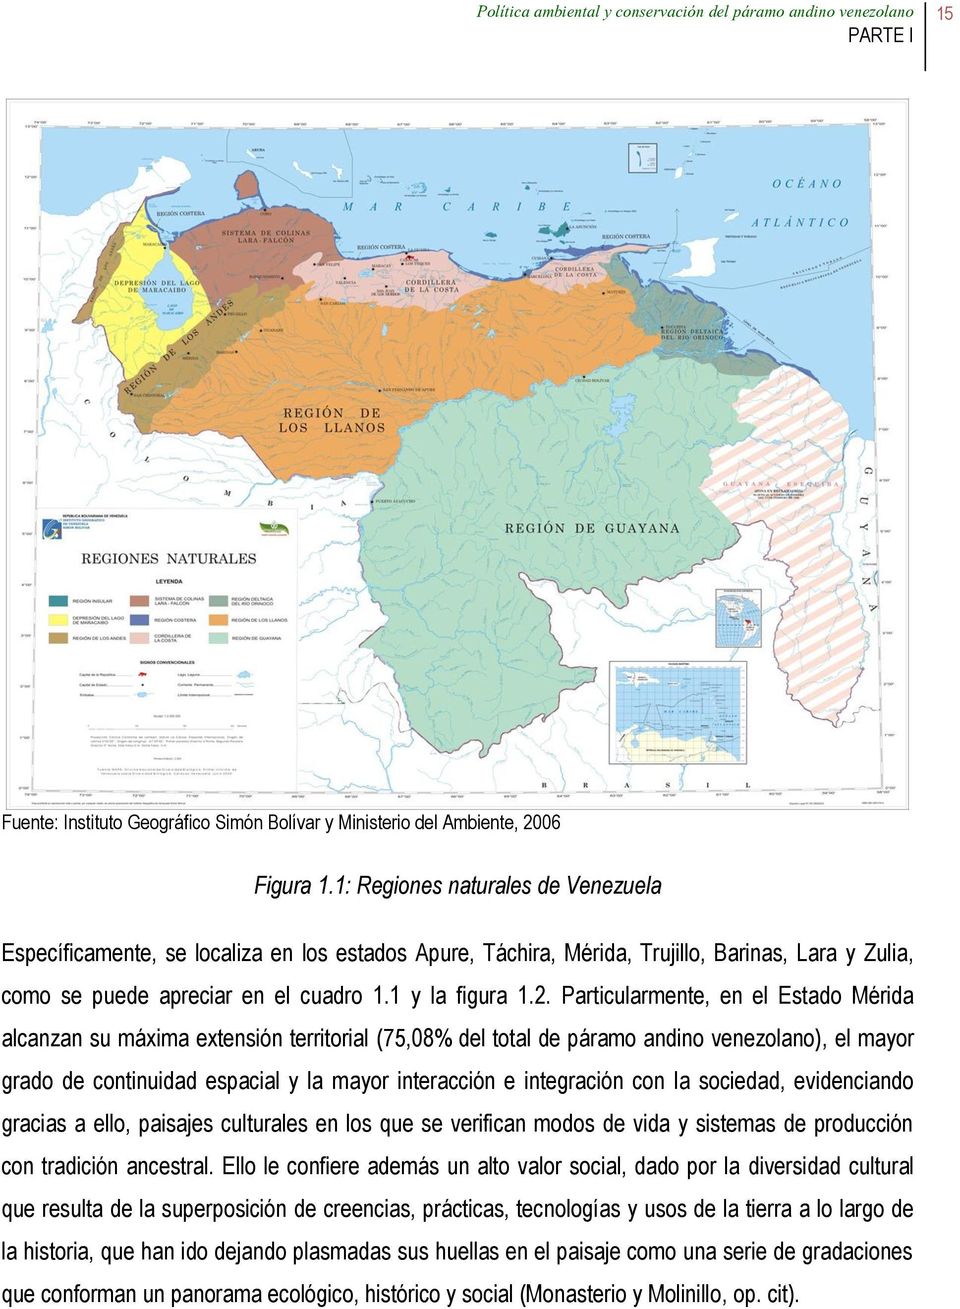 Particularmente, en el Estado Mérida alcanzan su máxima extensión territorial (75,08% del total de páramo andino venezolano), el mayor grado de continuidad espacial y la mayor interacción e